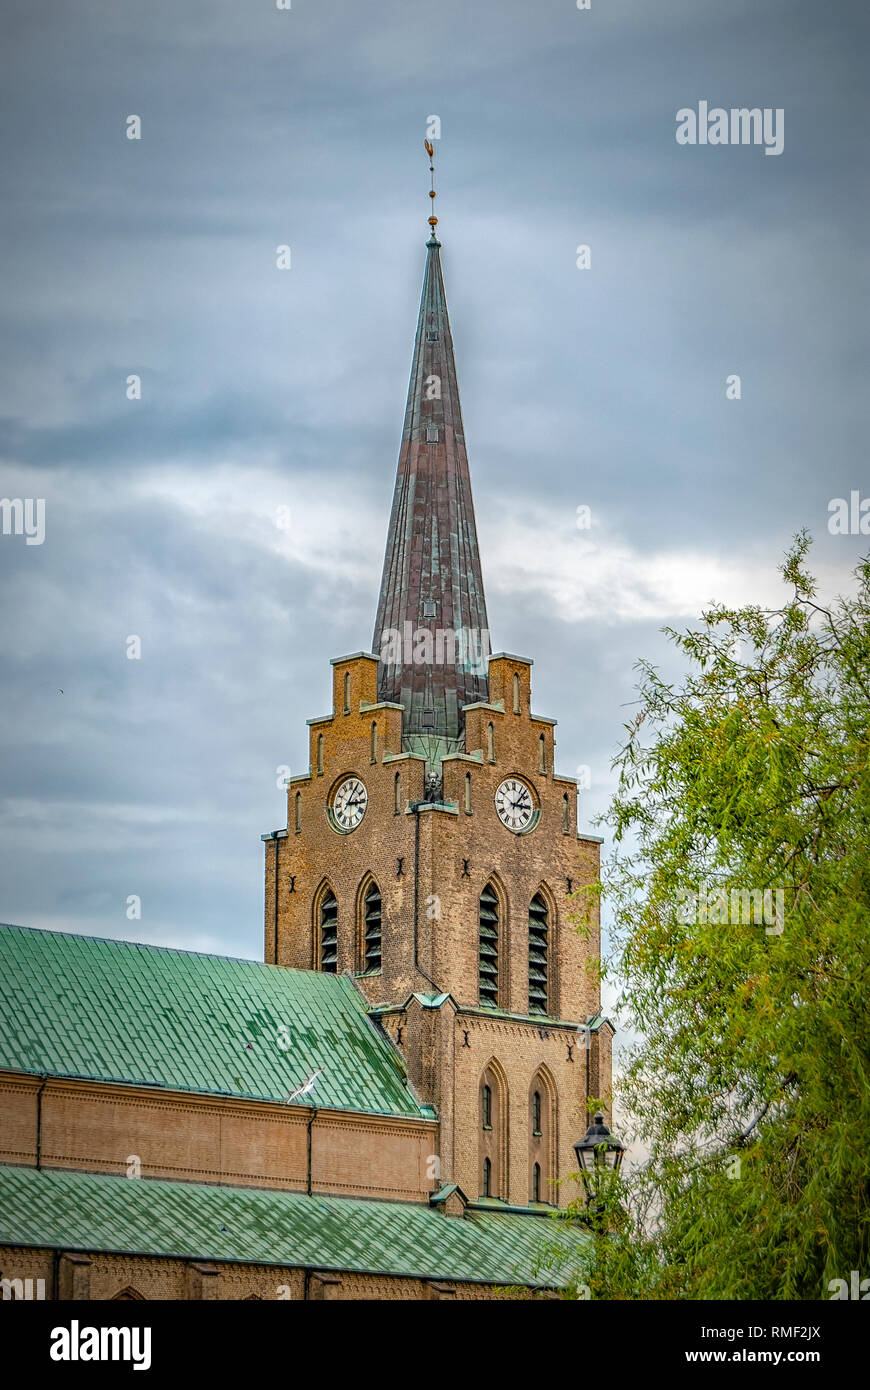 Halmstads Saint Nicholas church in the Halland region of Sweden. Stock Photo